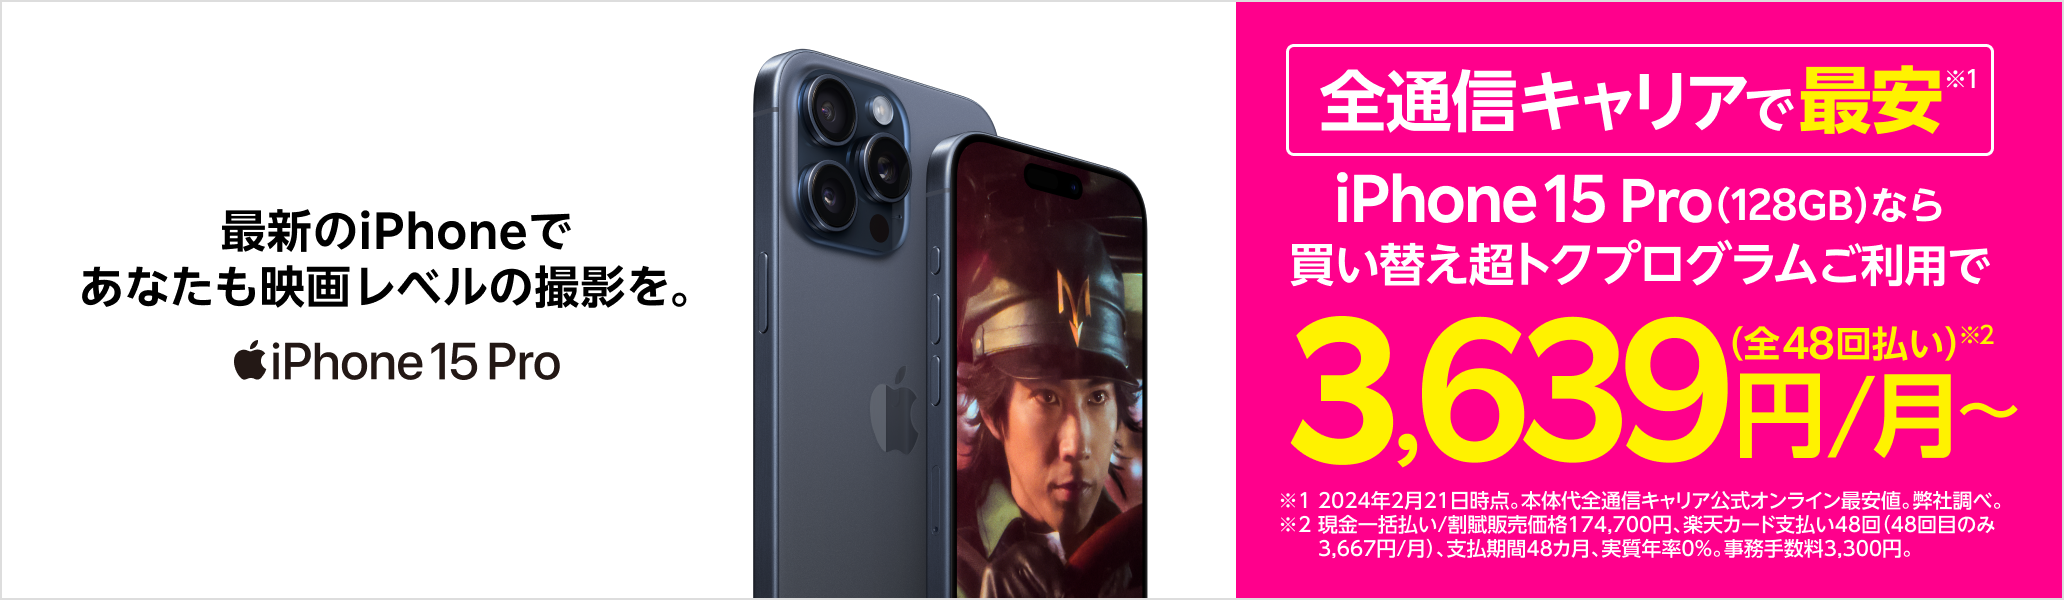 iPhone 15 Pro 最新のiPhoneであなたも映画レベルの撮影を。全通信キャリアで最安※ ※2024年2月21日時点。弊社調べ